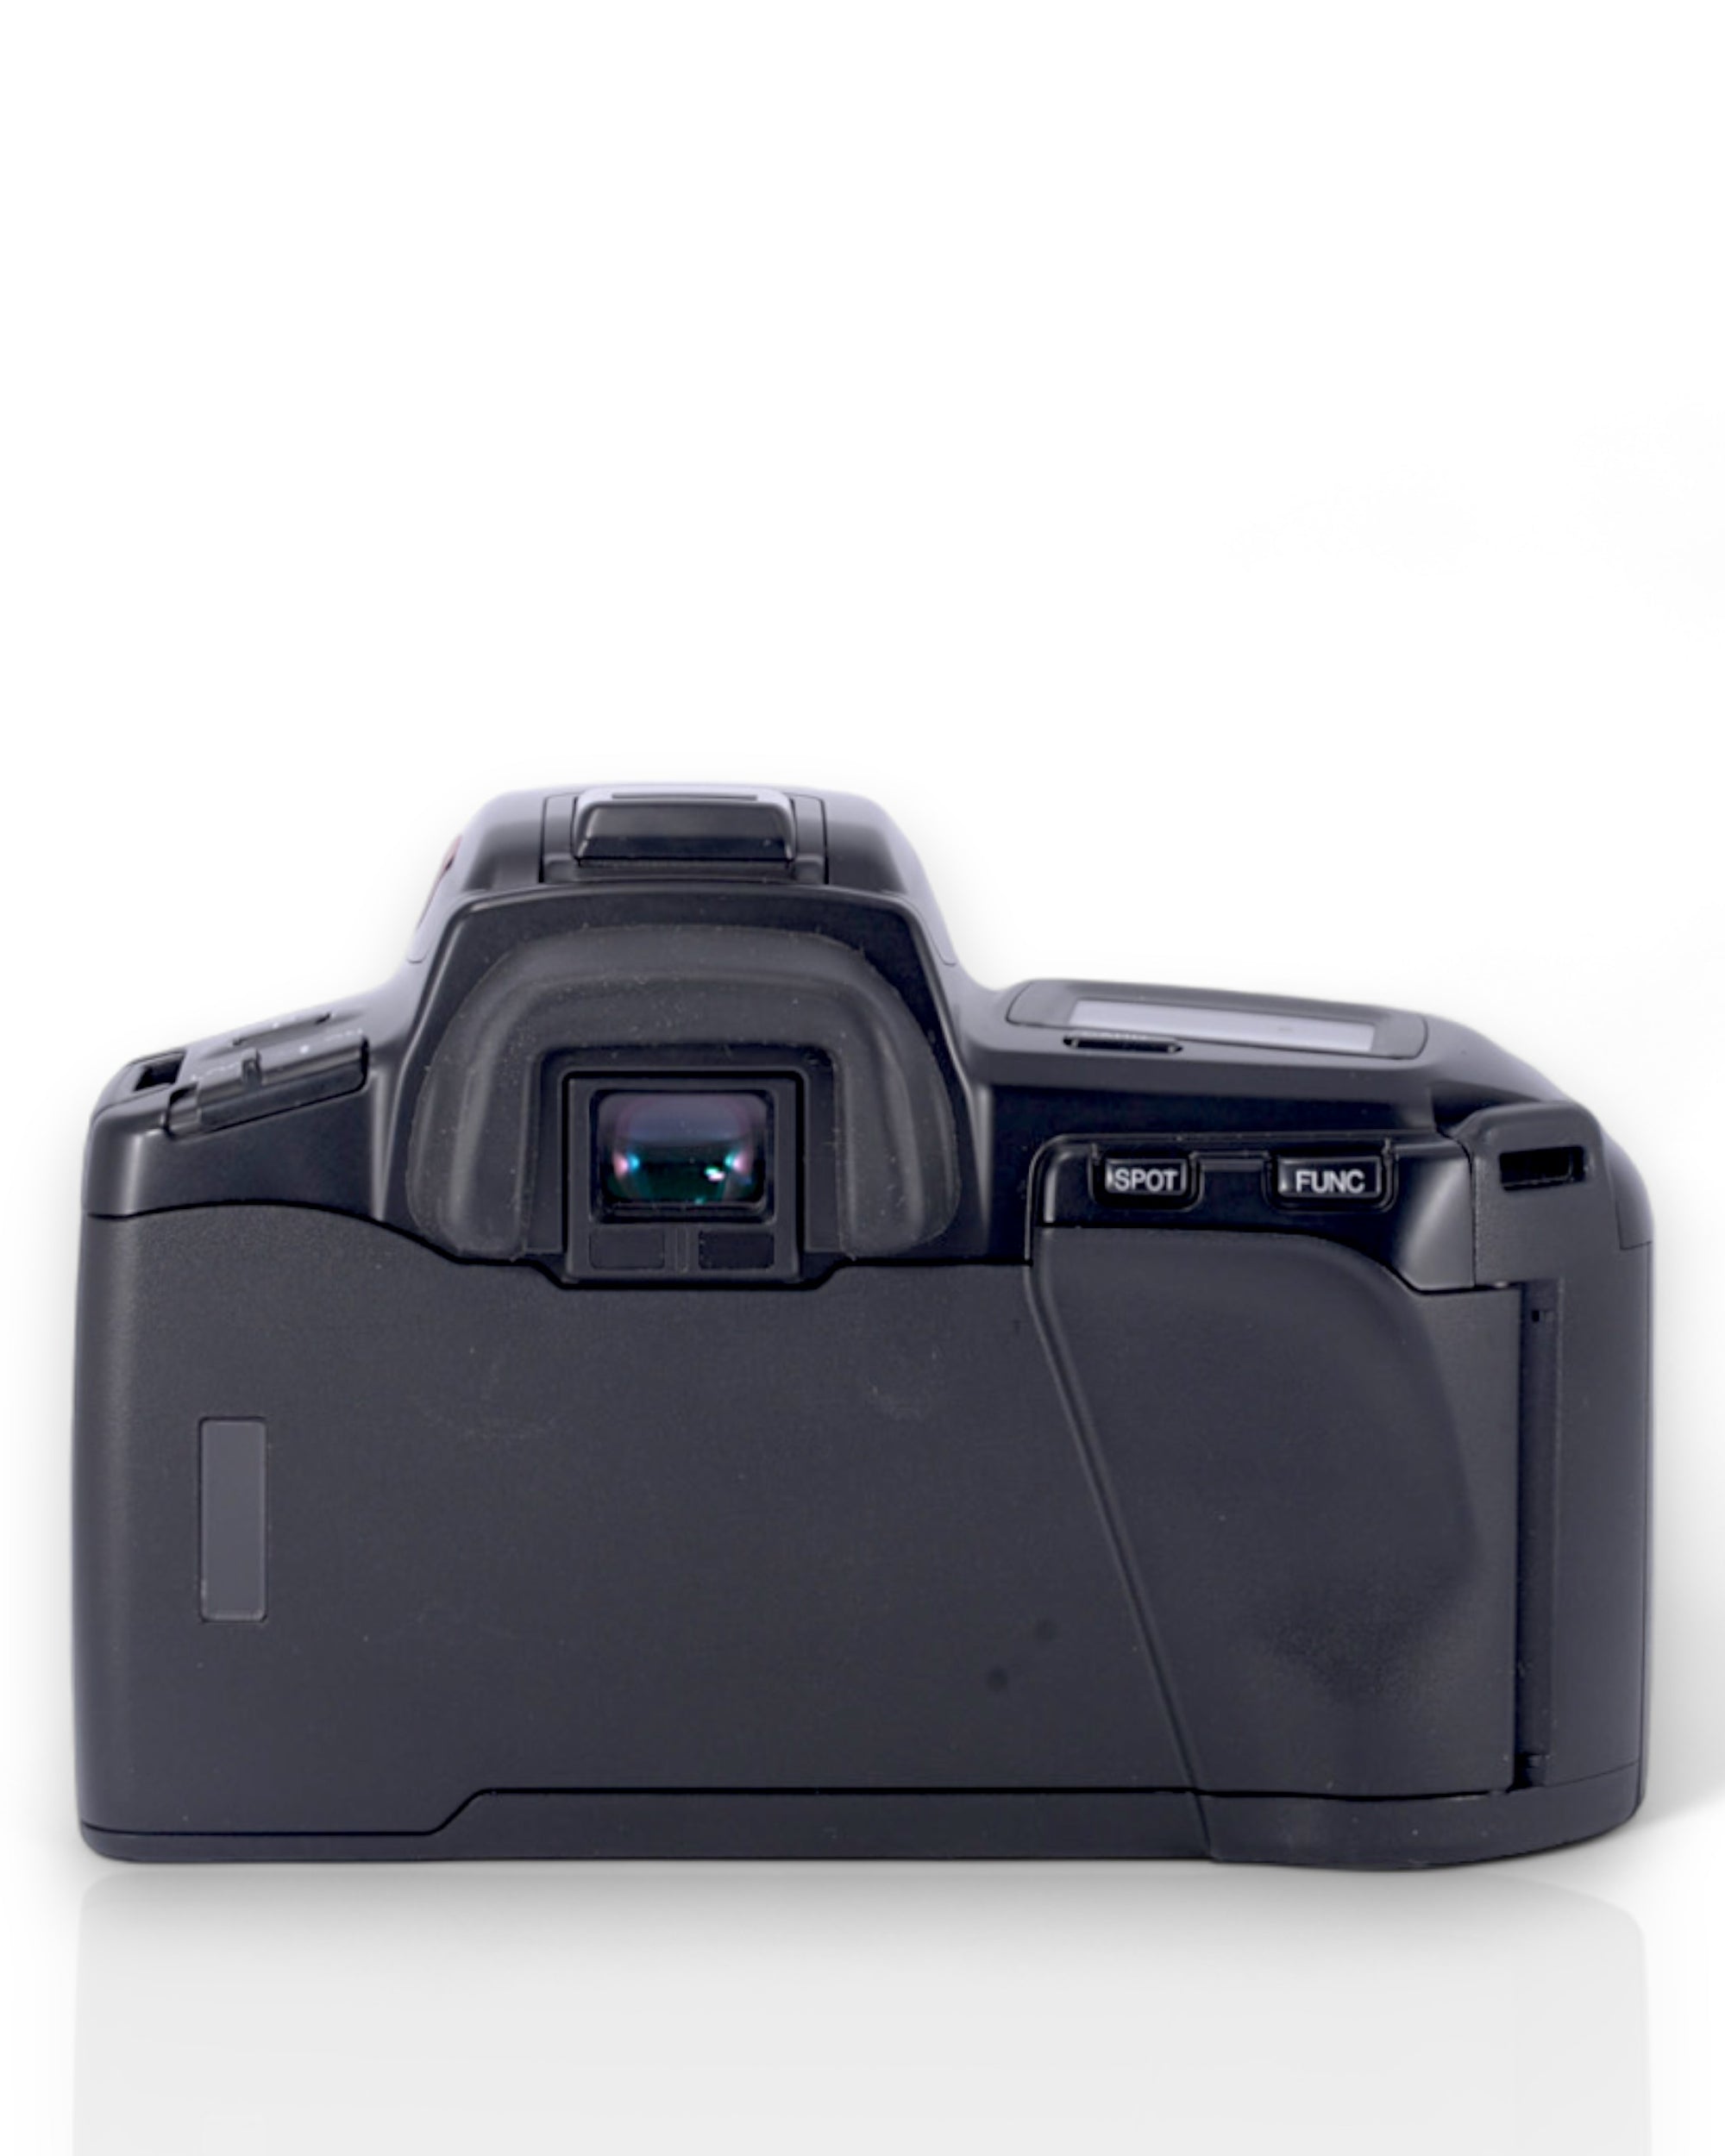 Minolta Dynax 5xi 35mm SLR film camera with 28-80mm zoom lens